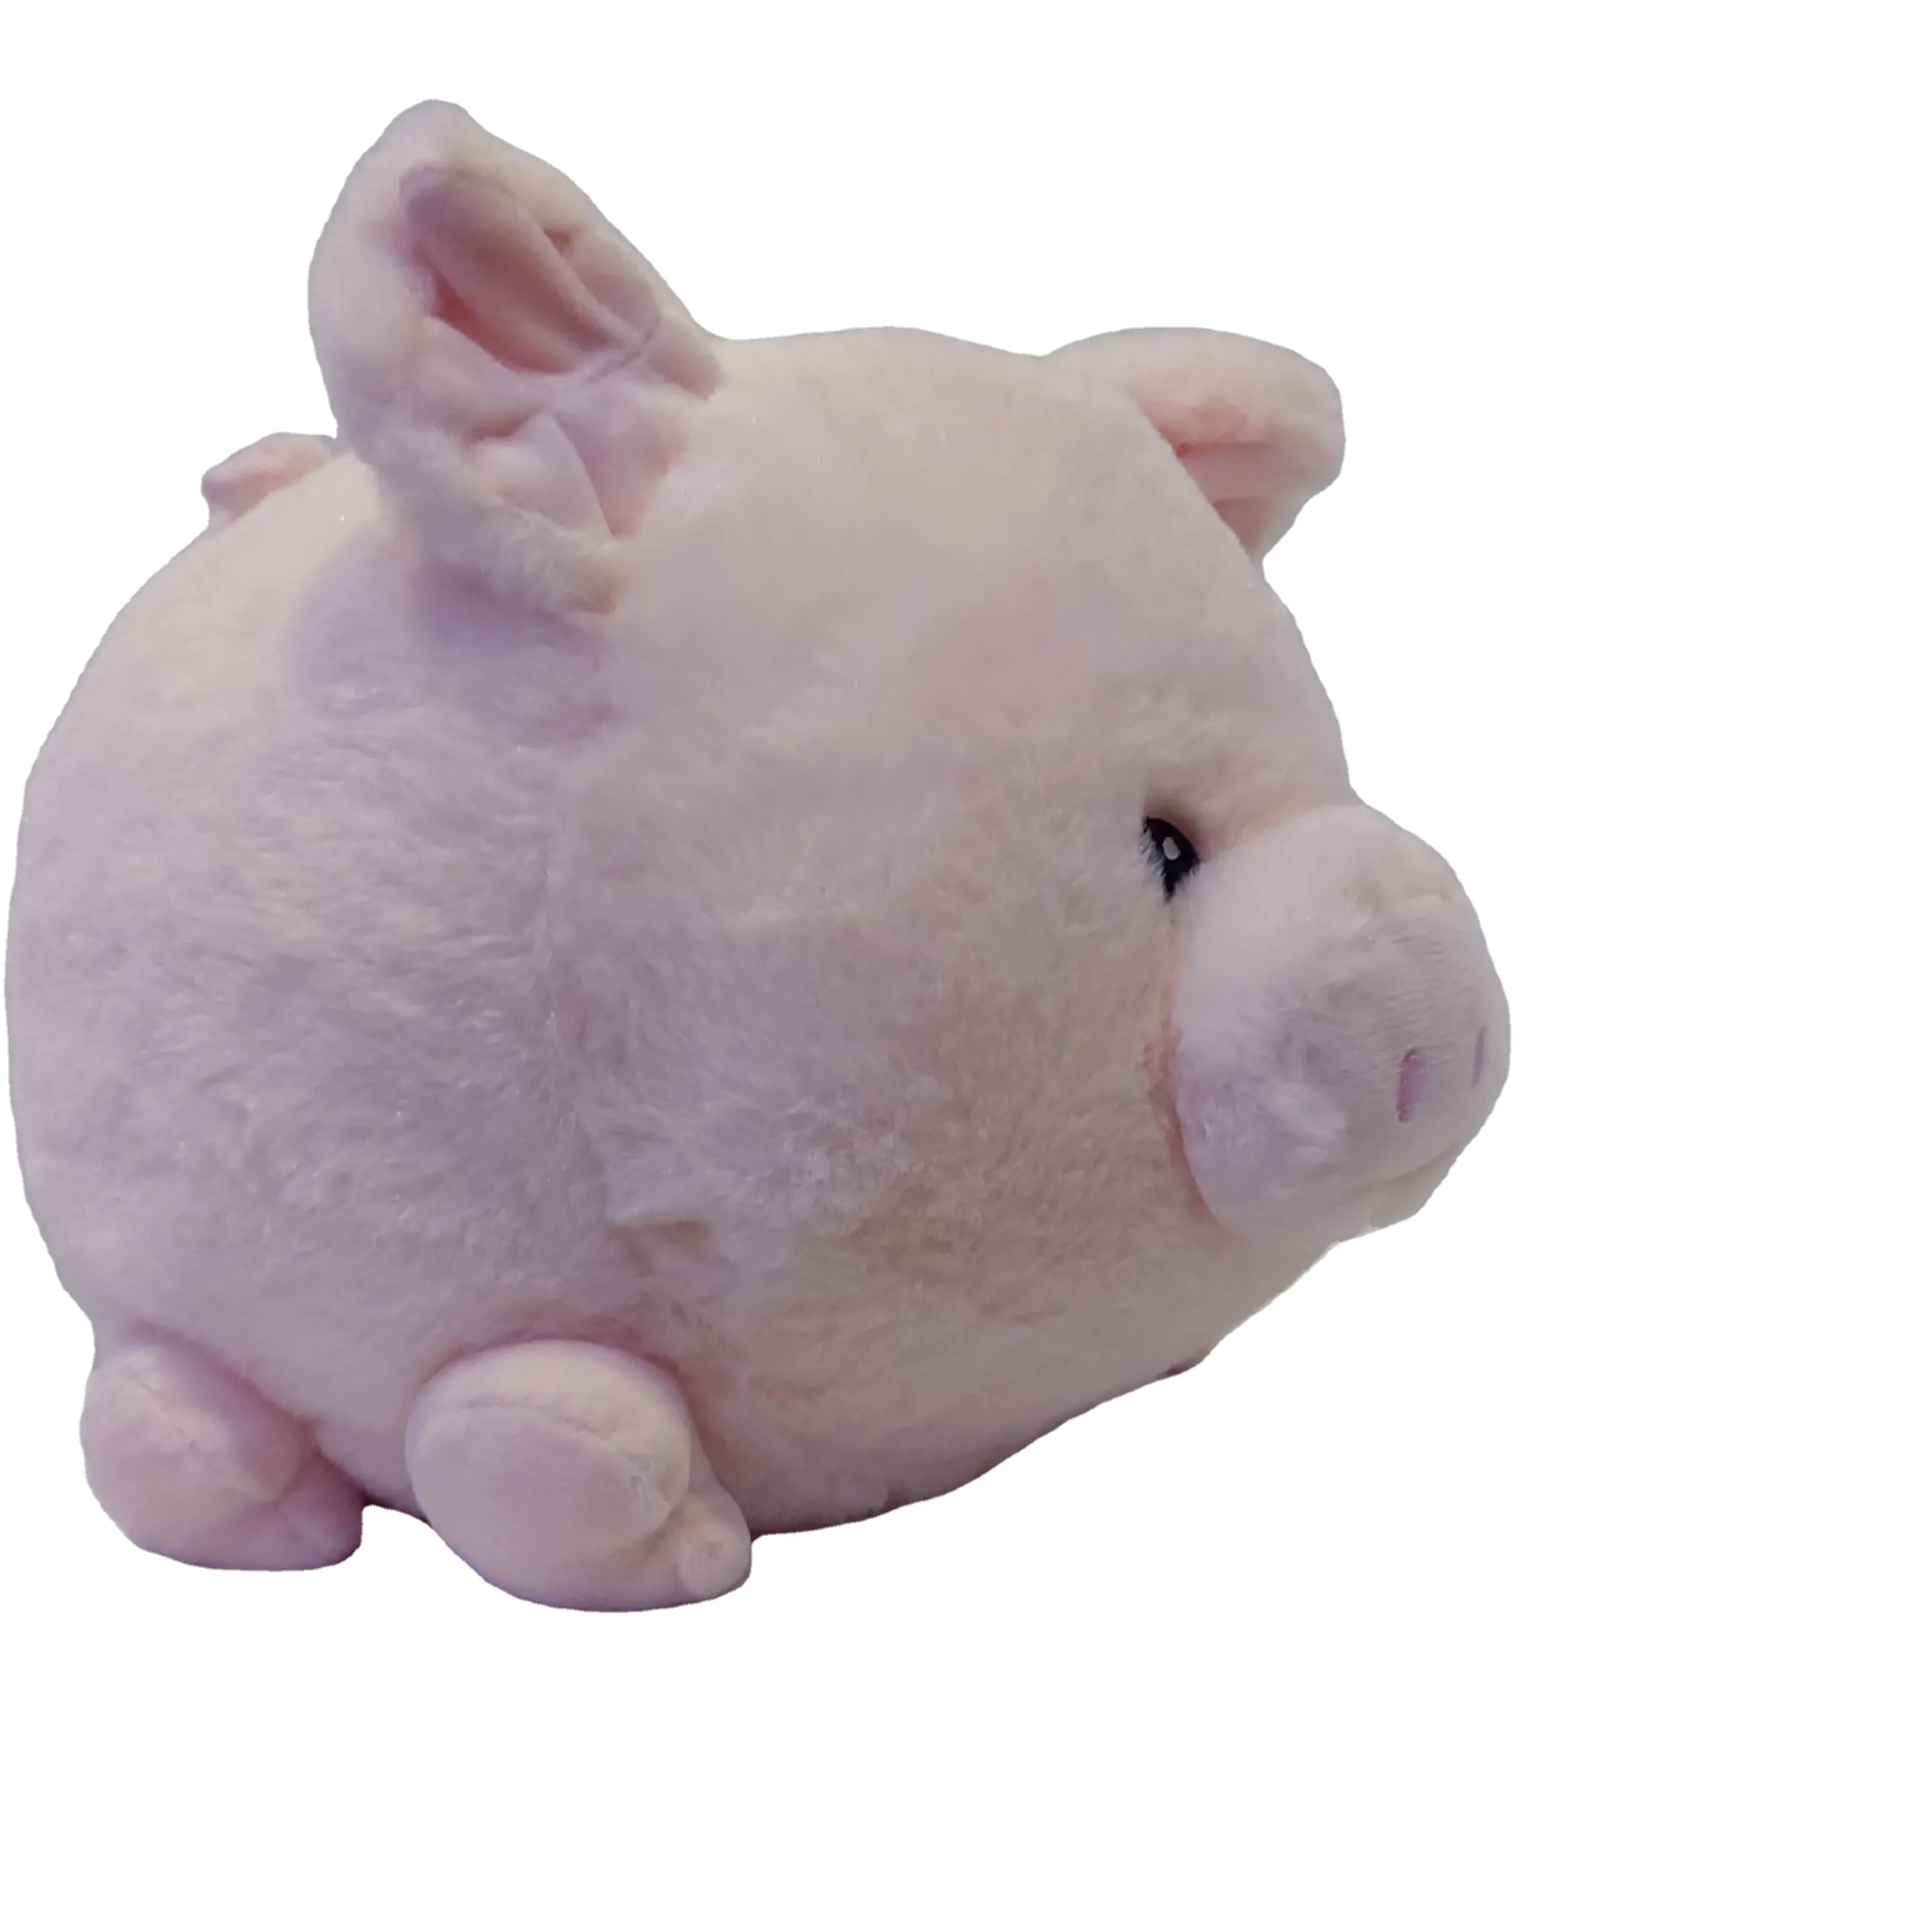 Porco de pelúcia personalizado para crianças, brinquedo de pelúcia fofo com animais personalizados para salvar dinheiro